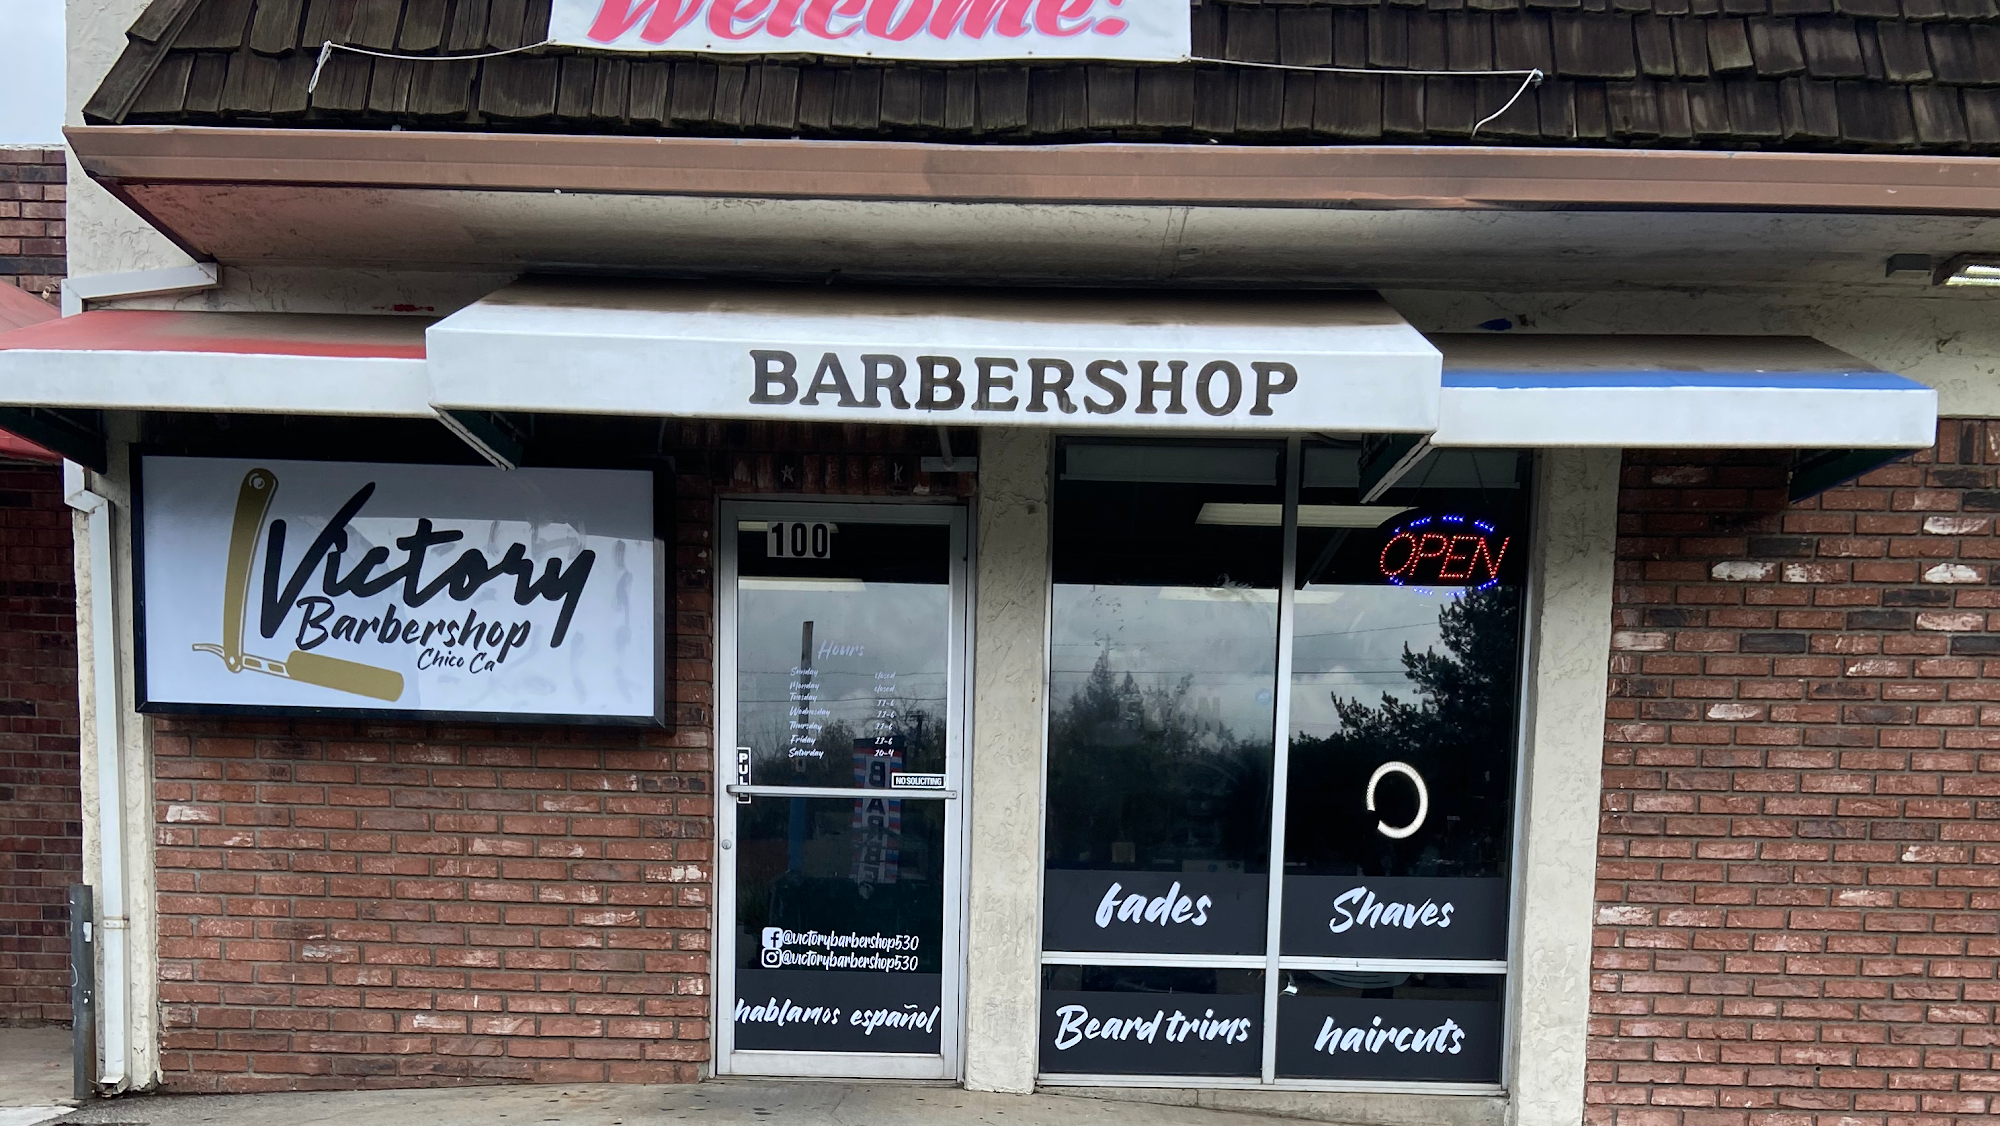 Victory barbershop